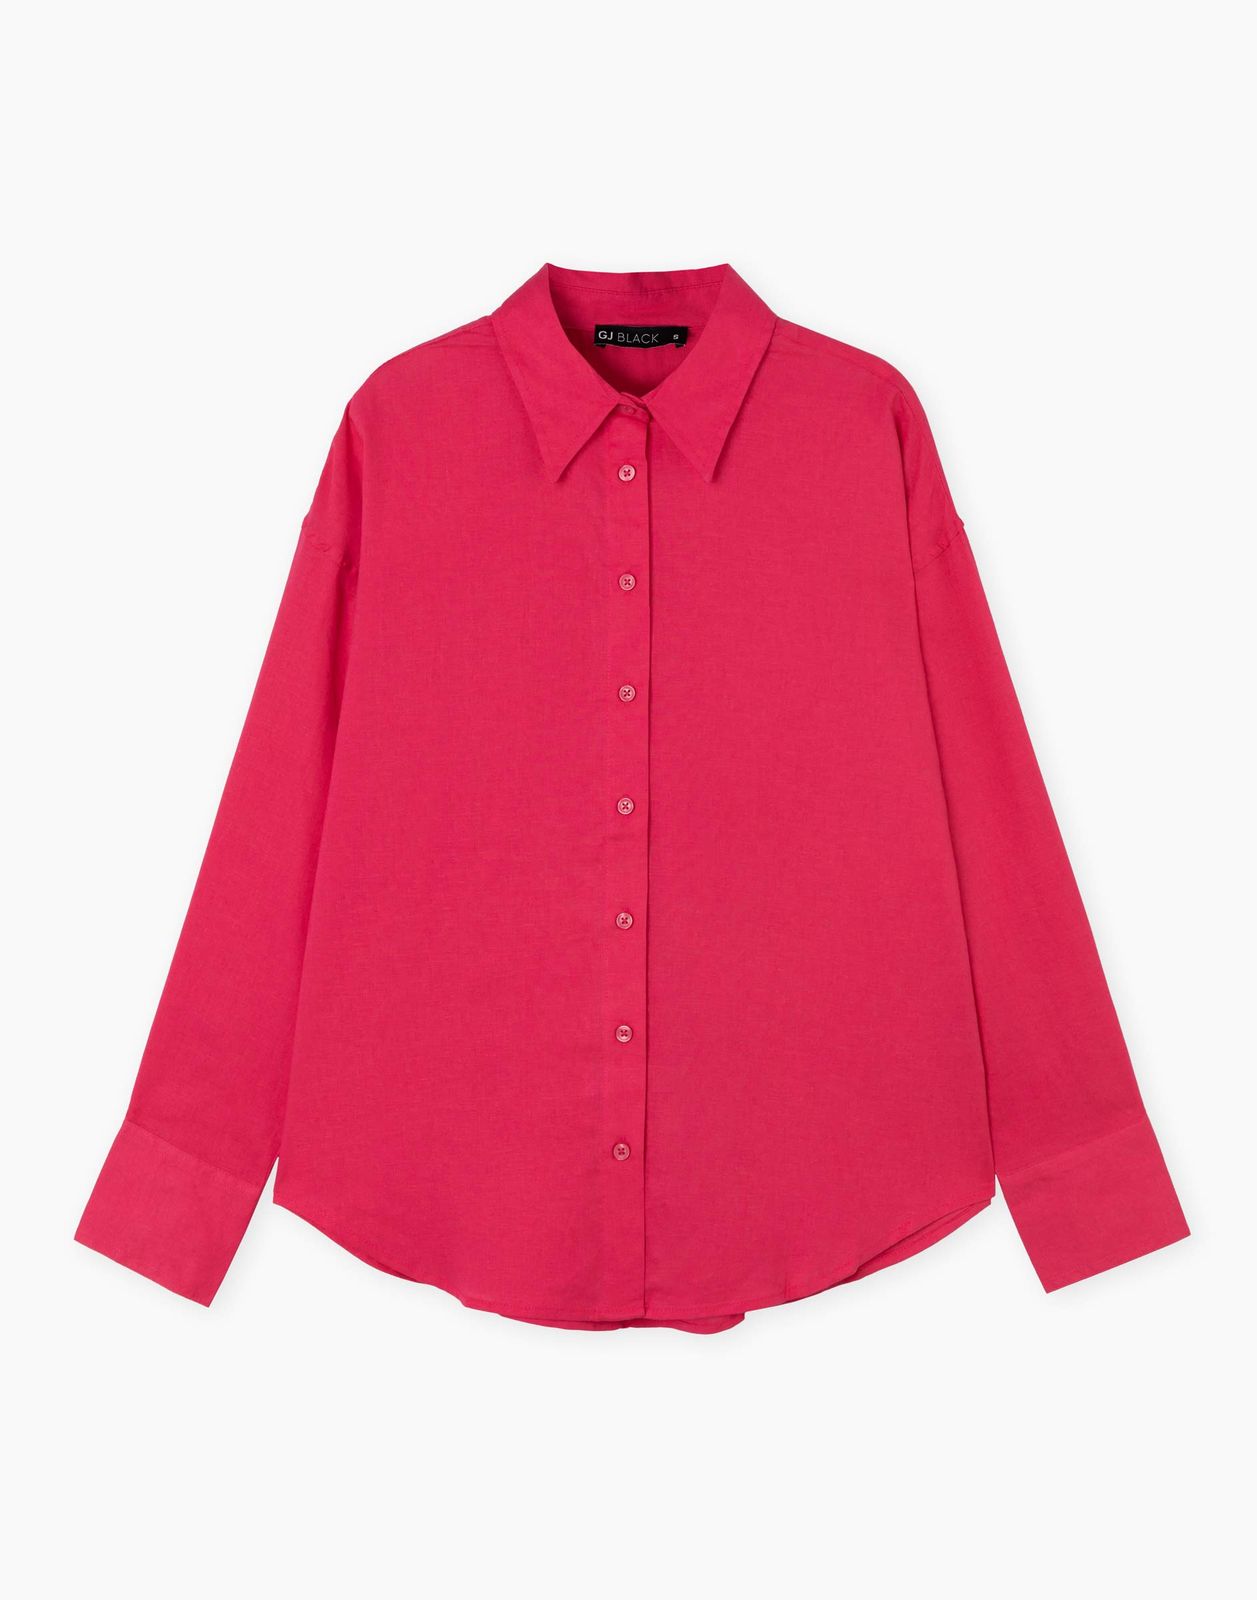 Рубашка женская Gloria Jeans GWT003851 розовый XS/164